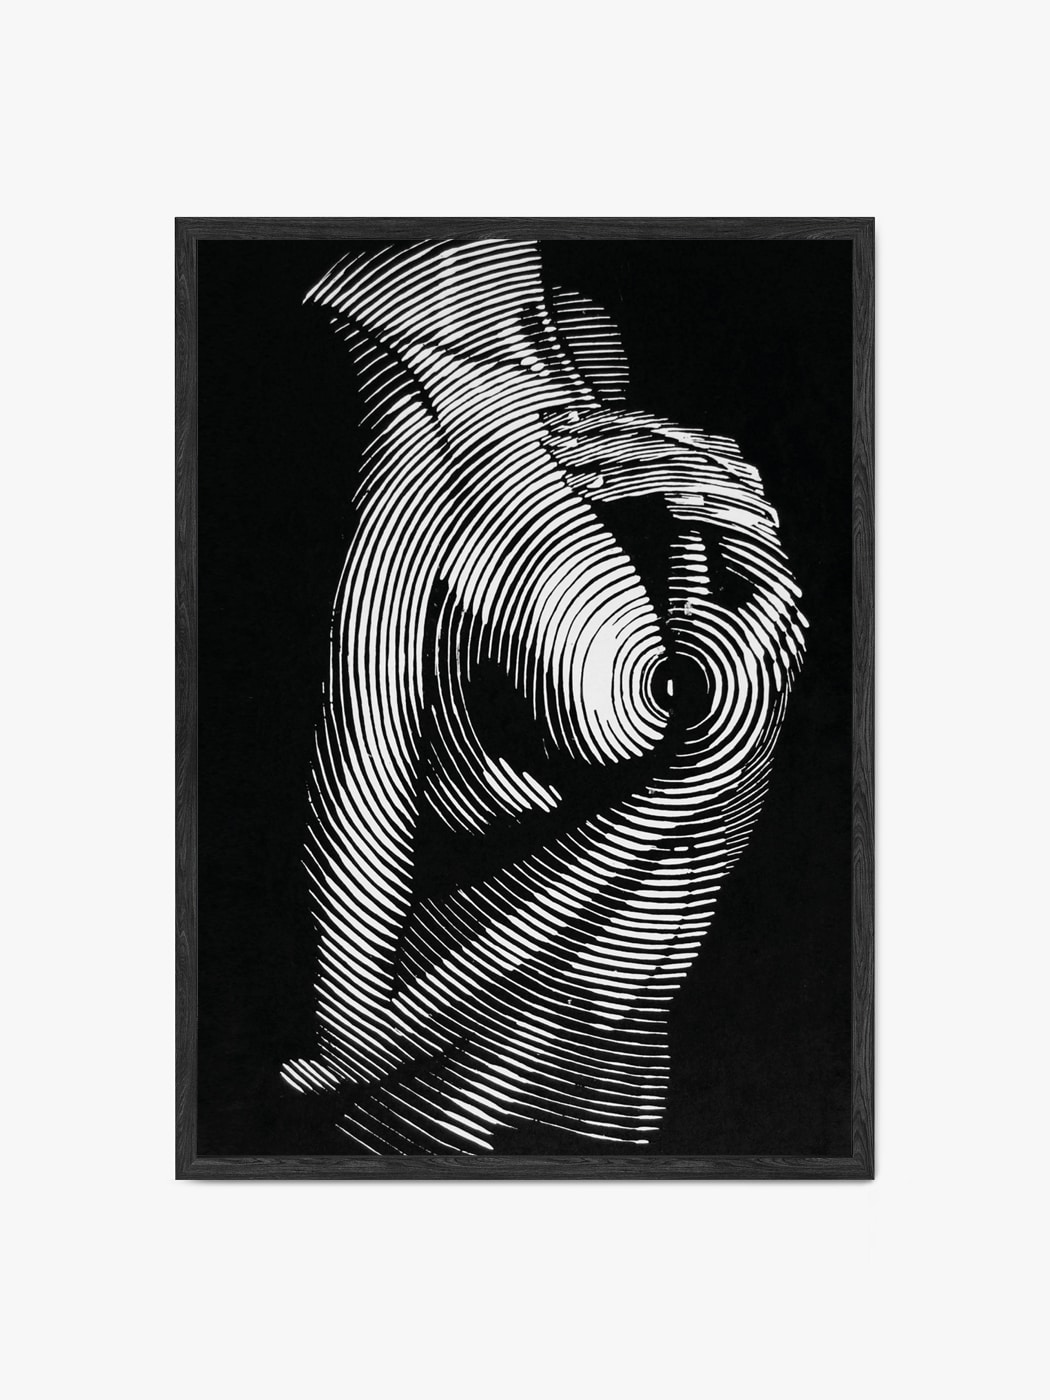 Obraz akustyczny w formie reprodukcji obrazu - Naga kobieta w zmysłowej pozie - Marta Kozłowska